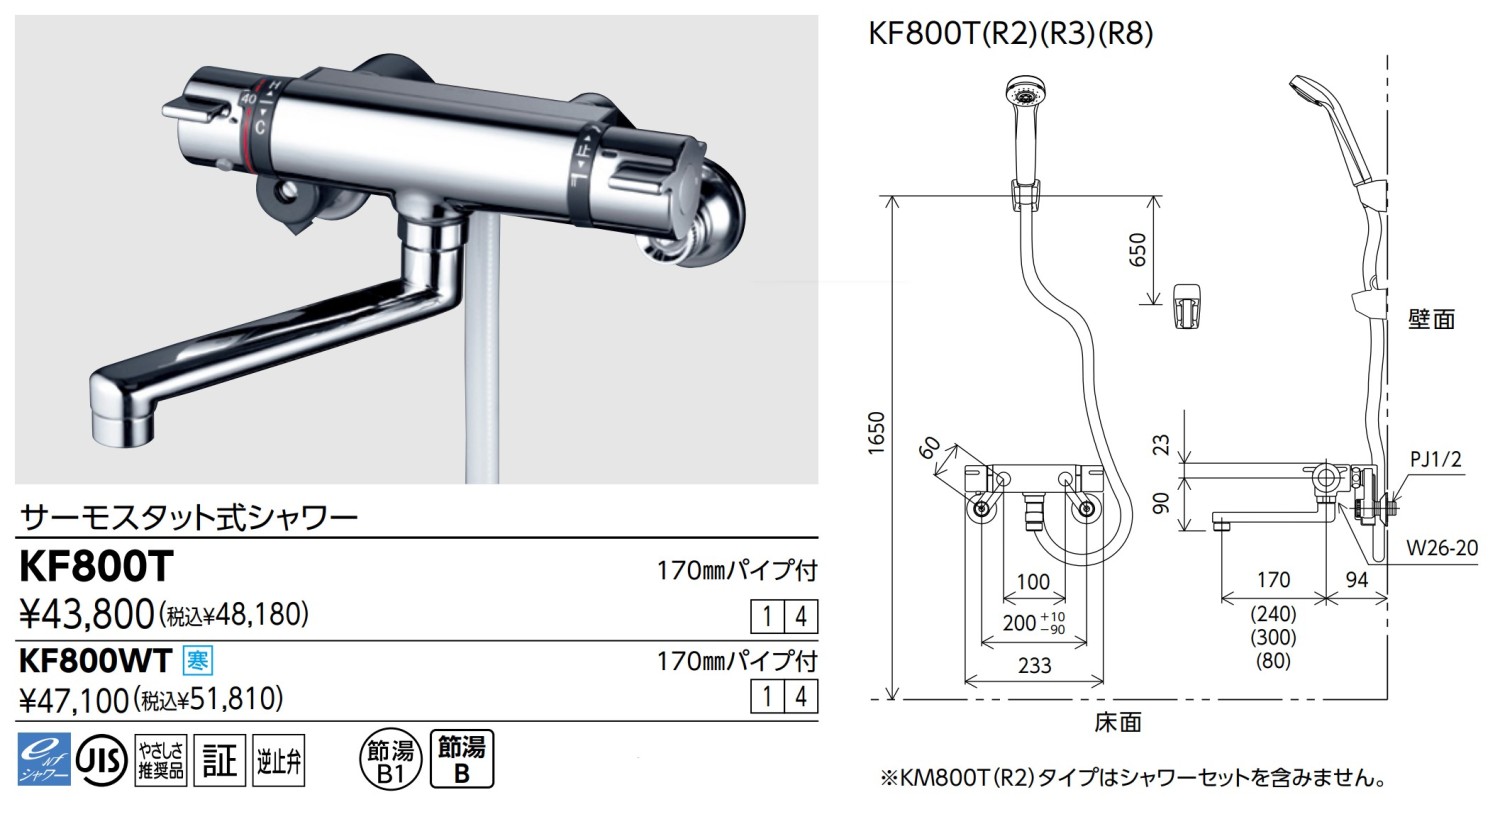 登場大人気アイテム KVK サーモスタット式シャワー KF800T